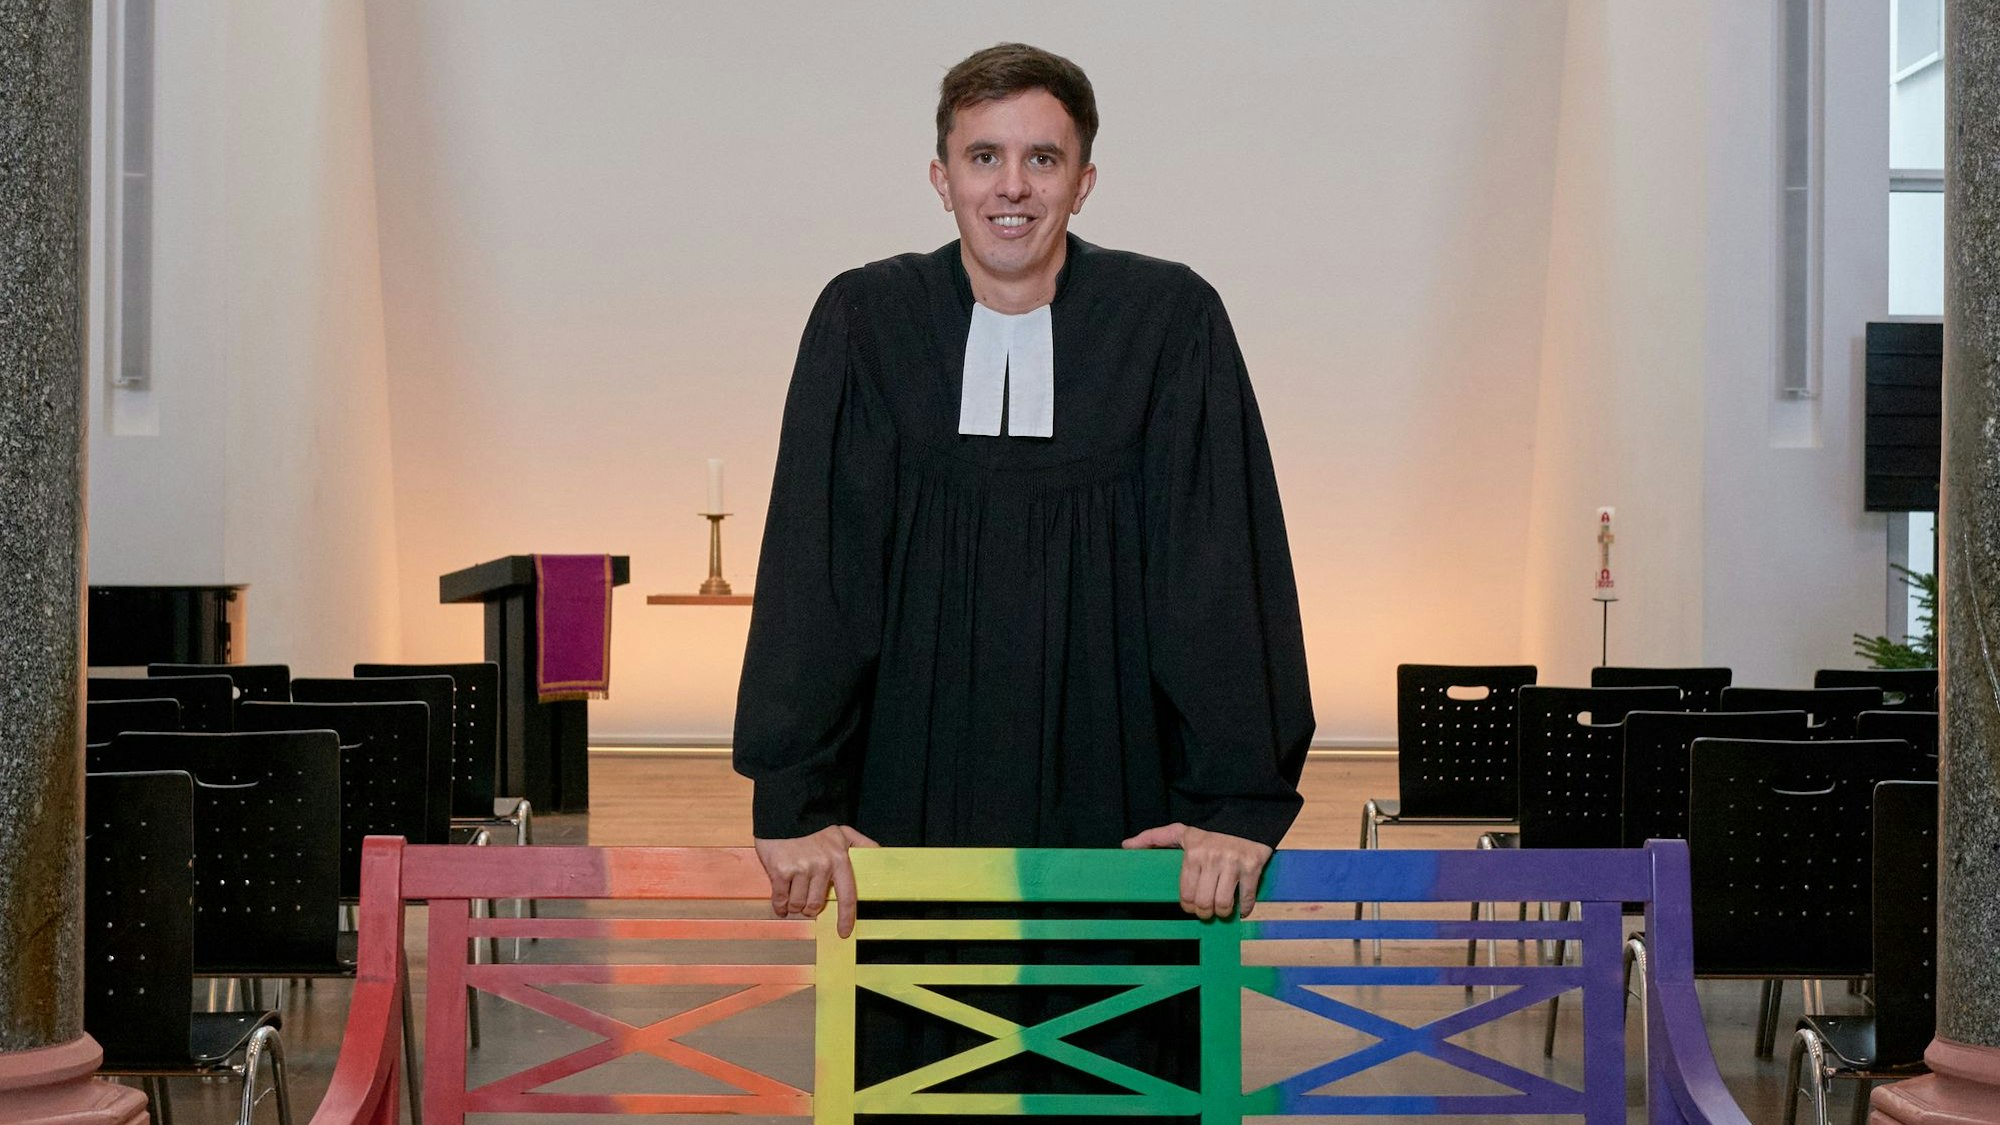 Tim Lahr, evangelischer Pfarrer, steht im Talar in der Kölner Christuskirche am Stadtgarten. Er stützt sich mit den Händen auf eine Holzbank, die in Regenbogenfarben gestrichen ist.